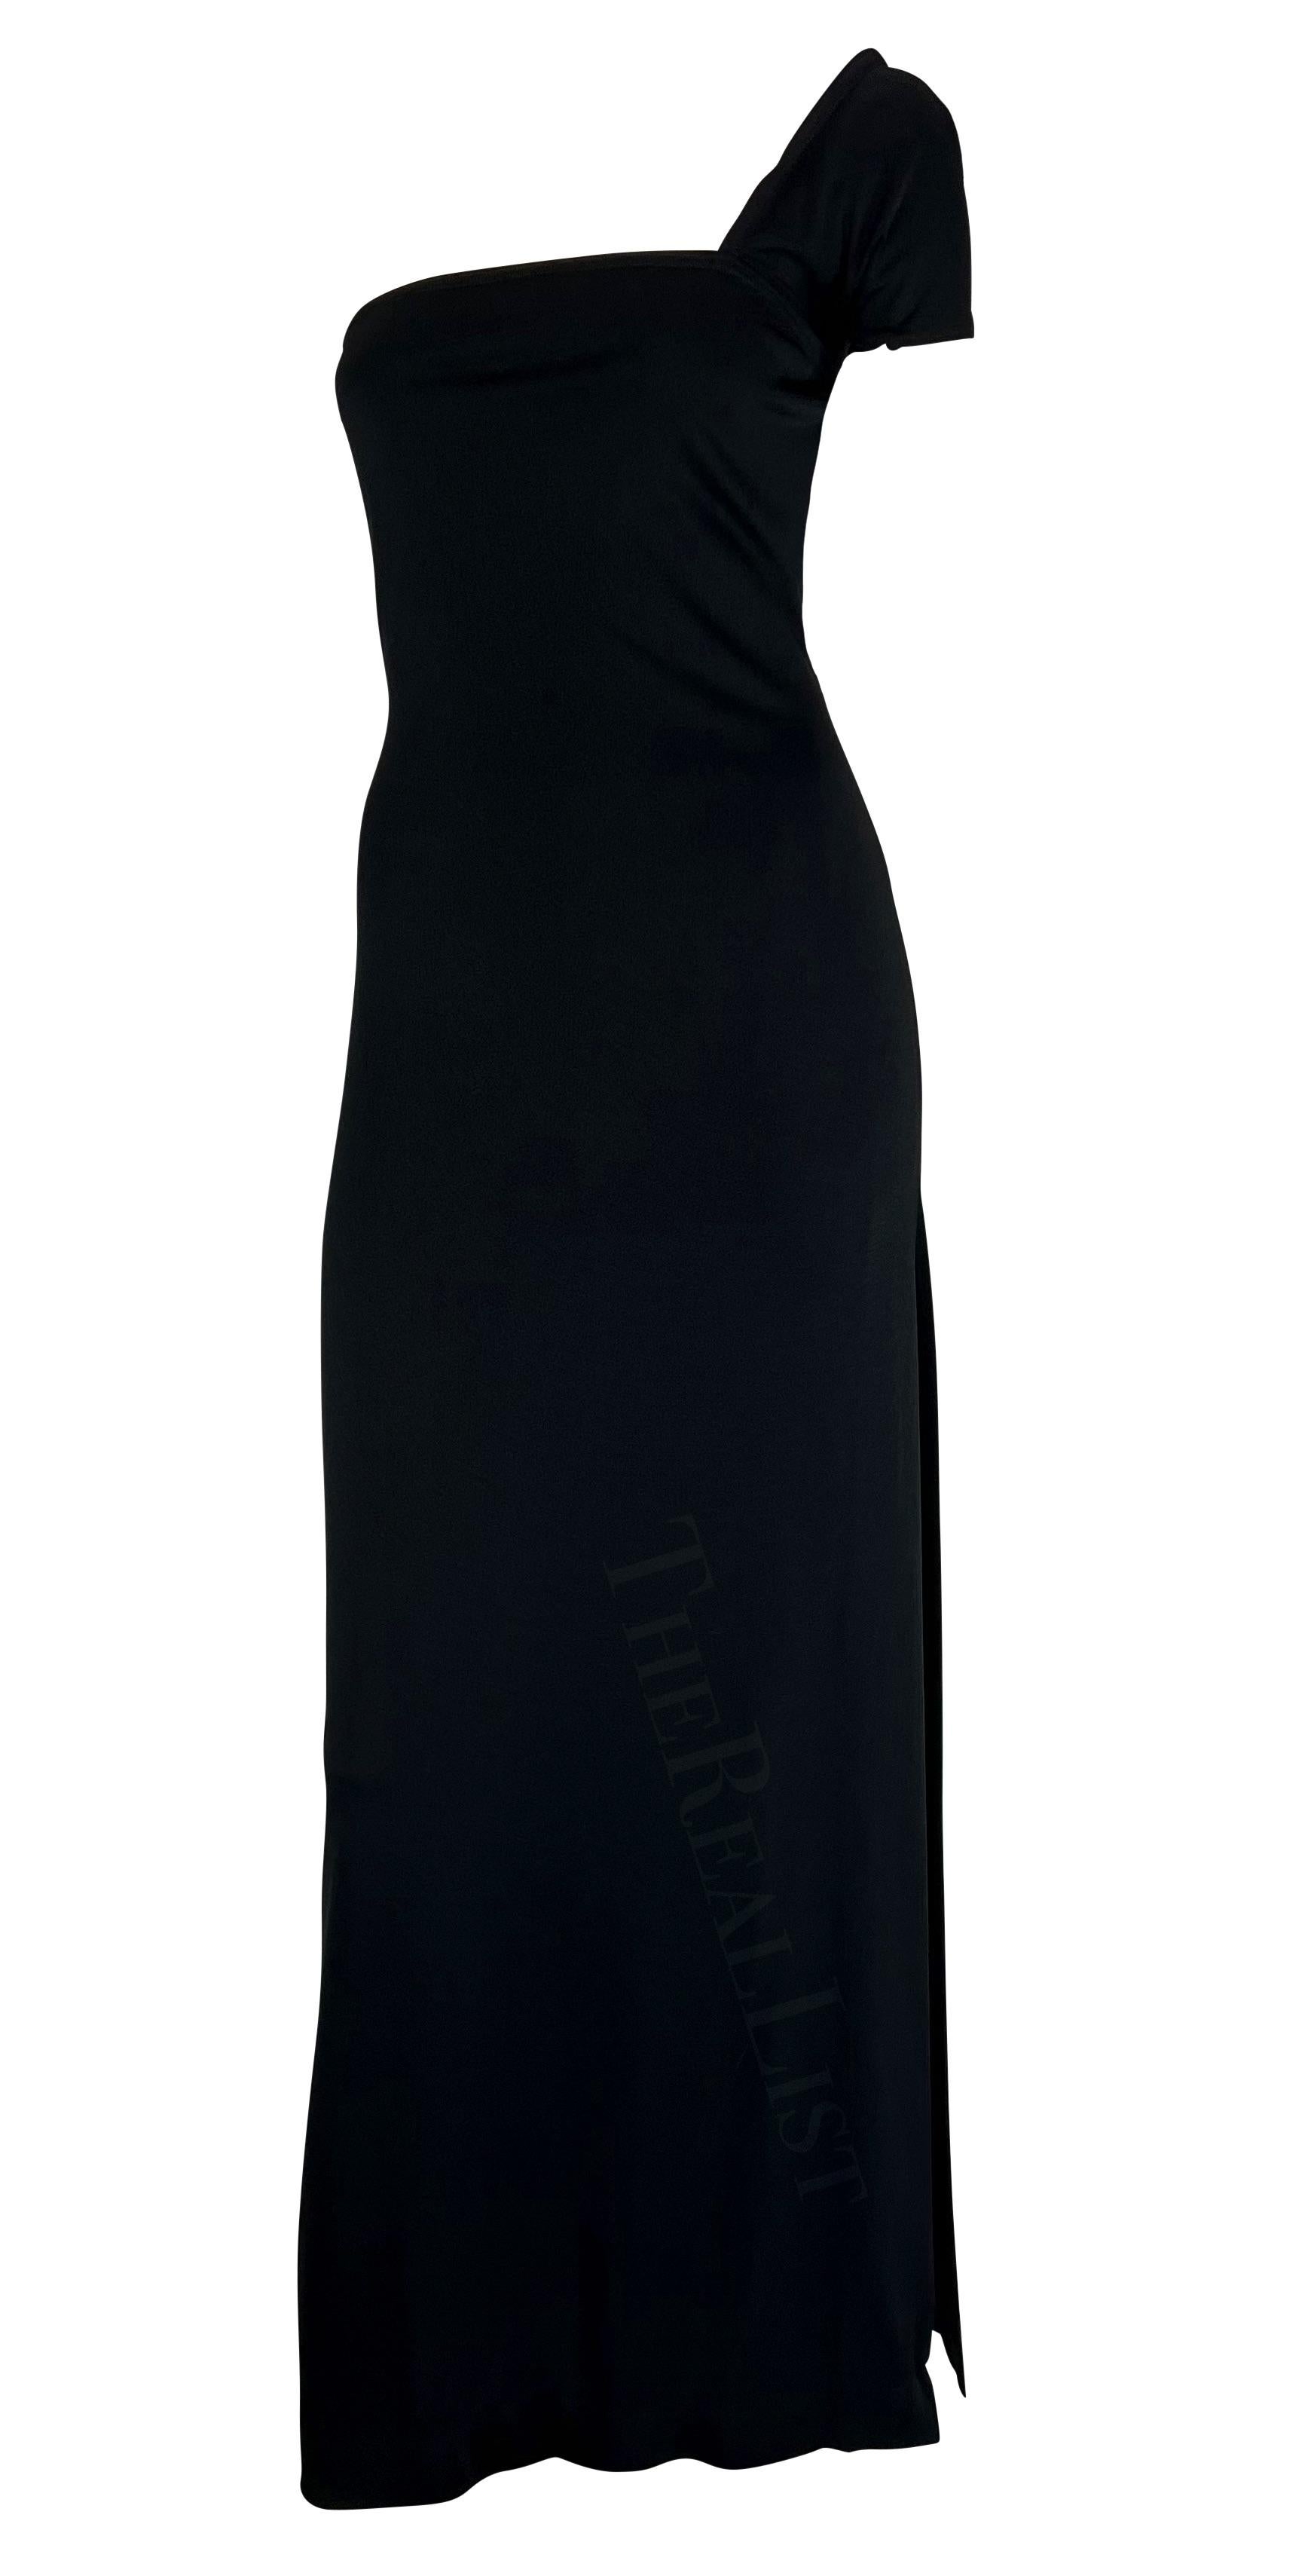 Sie präsentiert ein unglaubliches schwarzes Abendkleid von Rudi Gernreich für Bob Cunningham. Dieses schicke Kleid im Säulenstil aus den 1970er Jahren hat einen einzelnen schulterfreien Träger, einen eckigen Ausschnitt und einen hohen Schlitz an